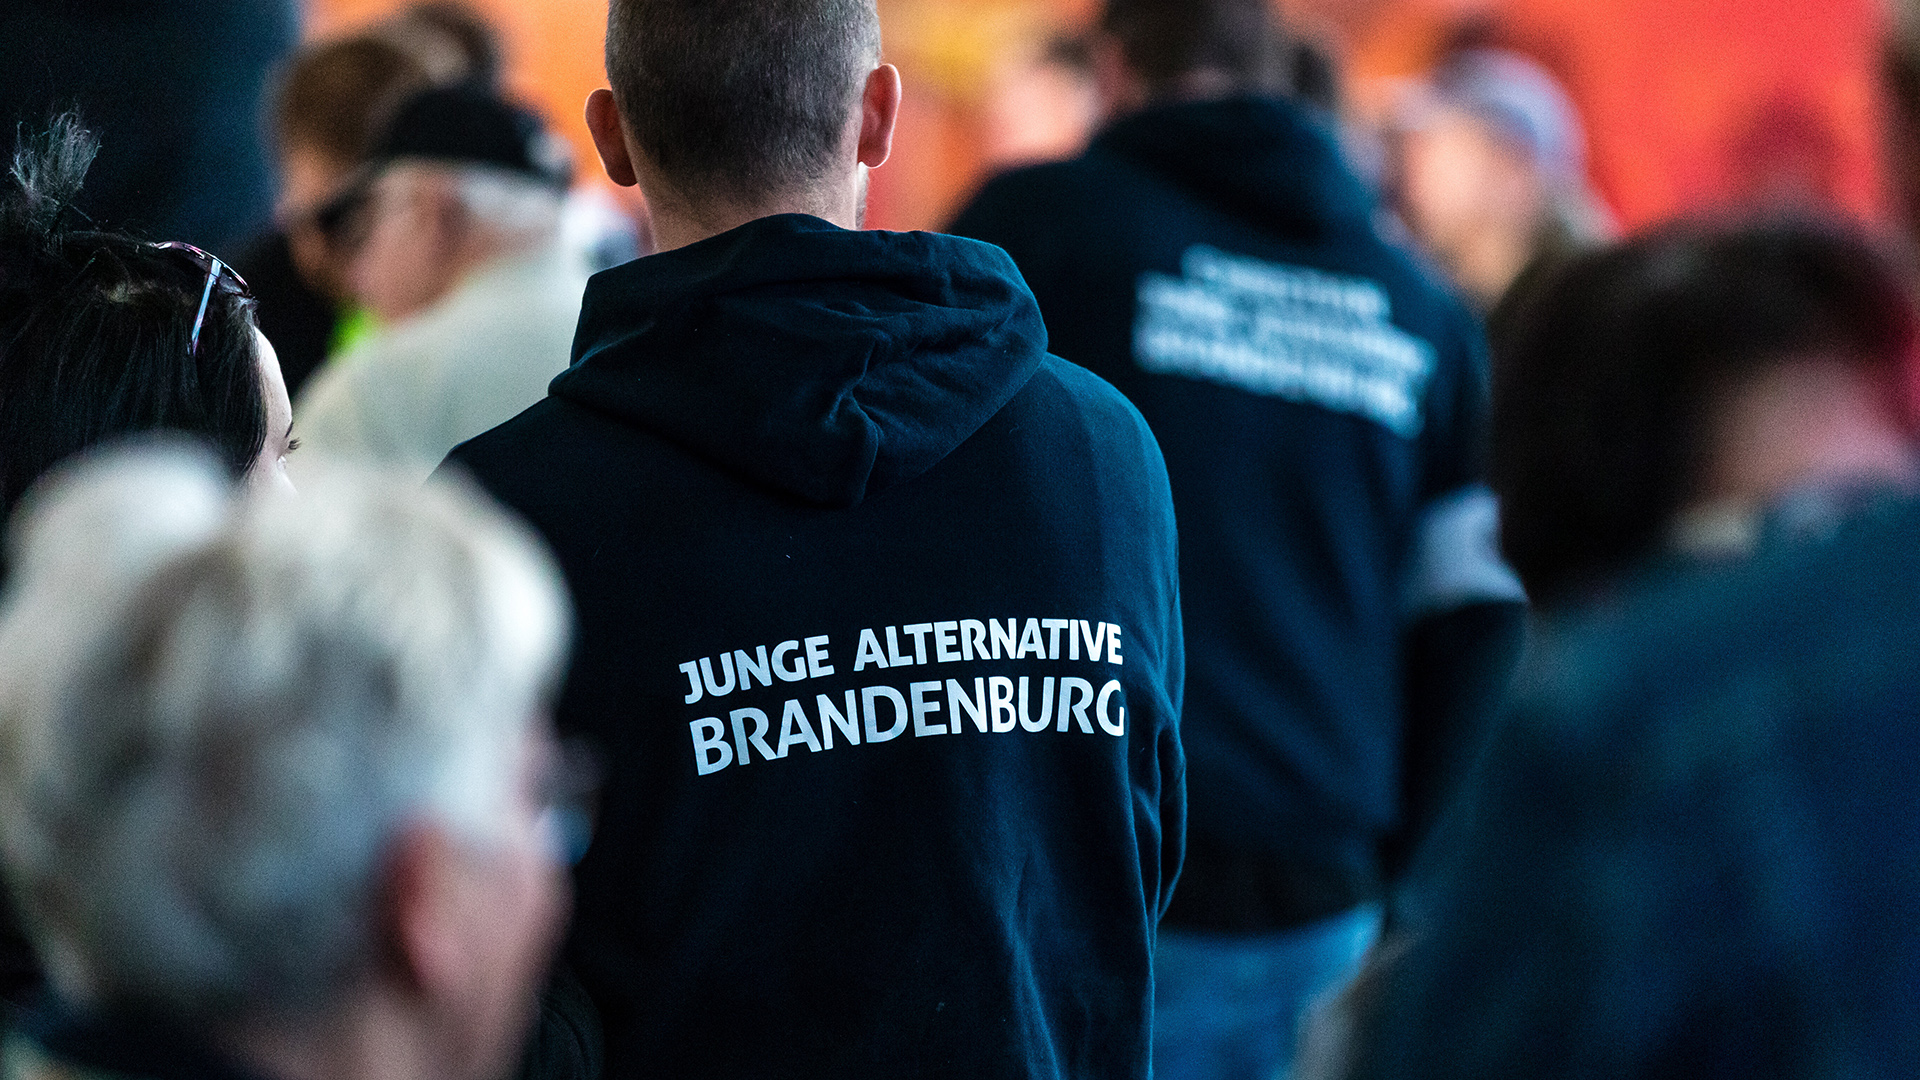 Teilnehmer einer Wahlkampfveranstaltung tragen Kleidung mit der Aufschrift "Junge Alternative Brandenburg".